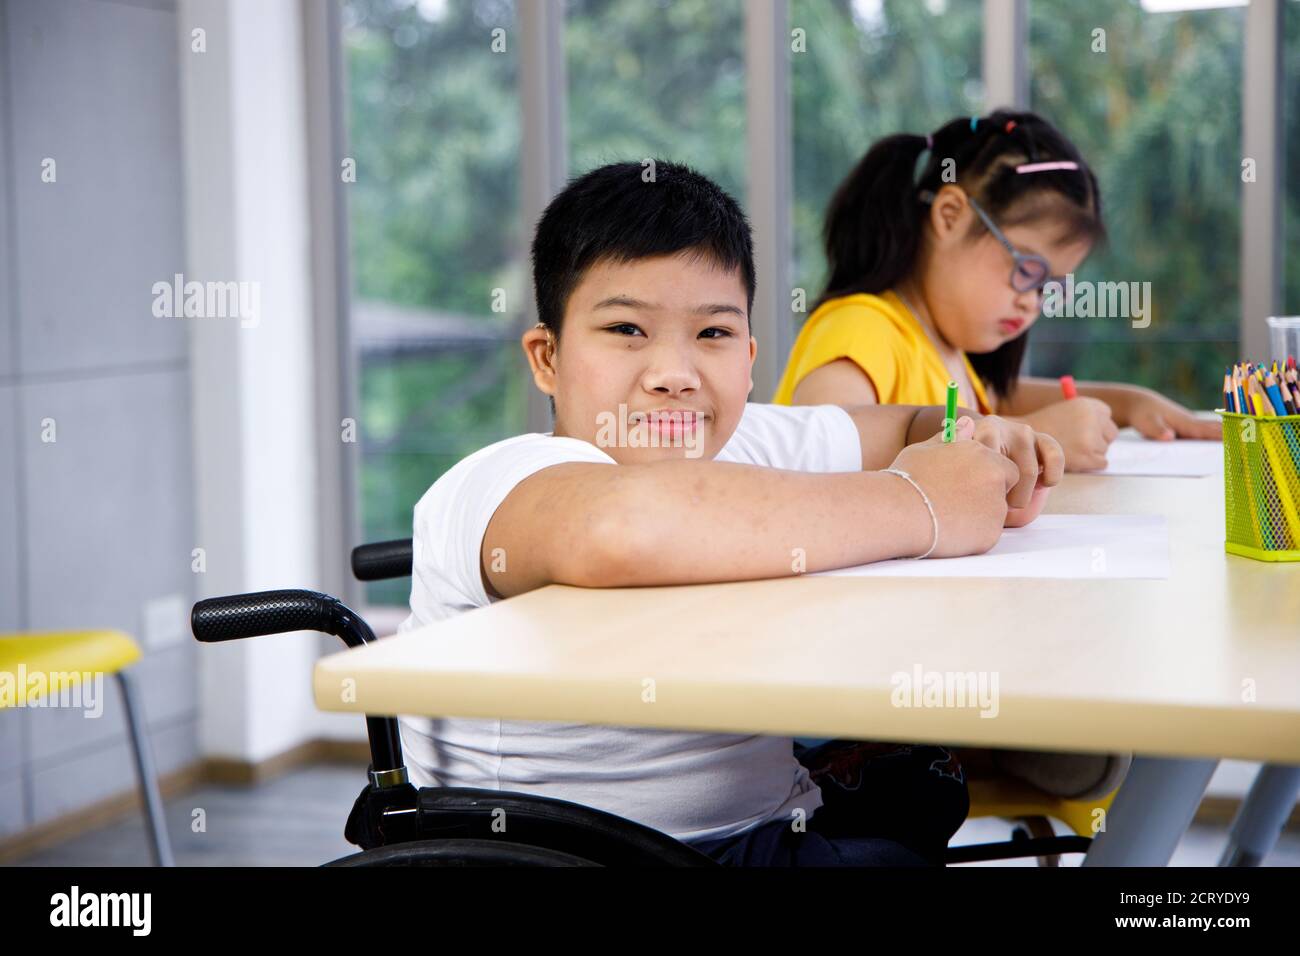 Behinderte asiatische junge auf Rollstuhl Studie im Klassenzimmer mit seinem Freund. Stockfoto